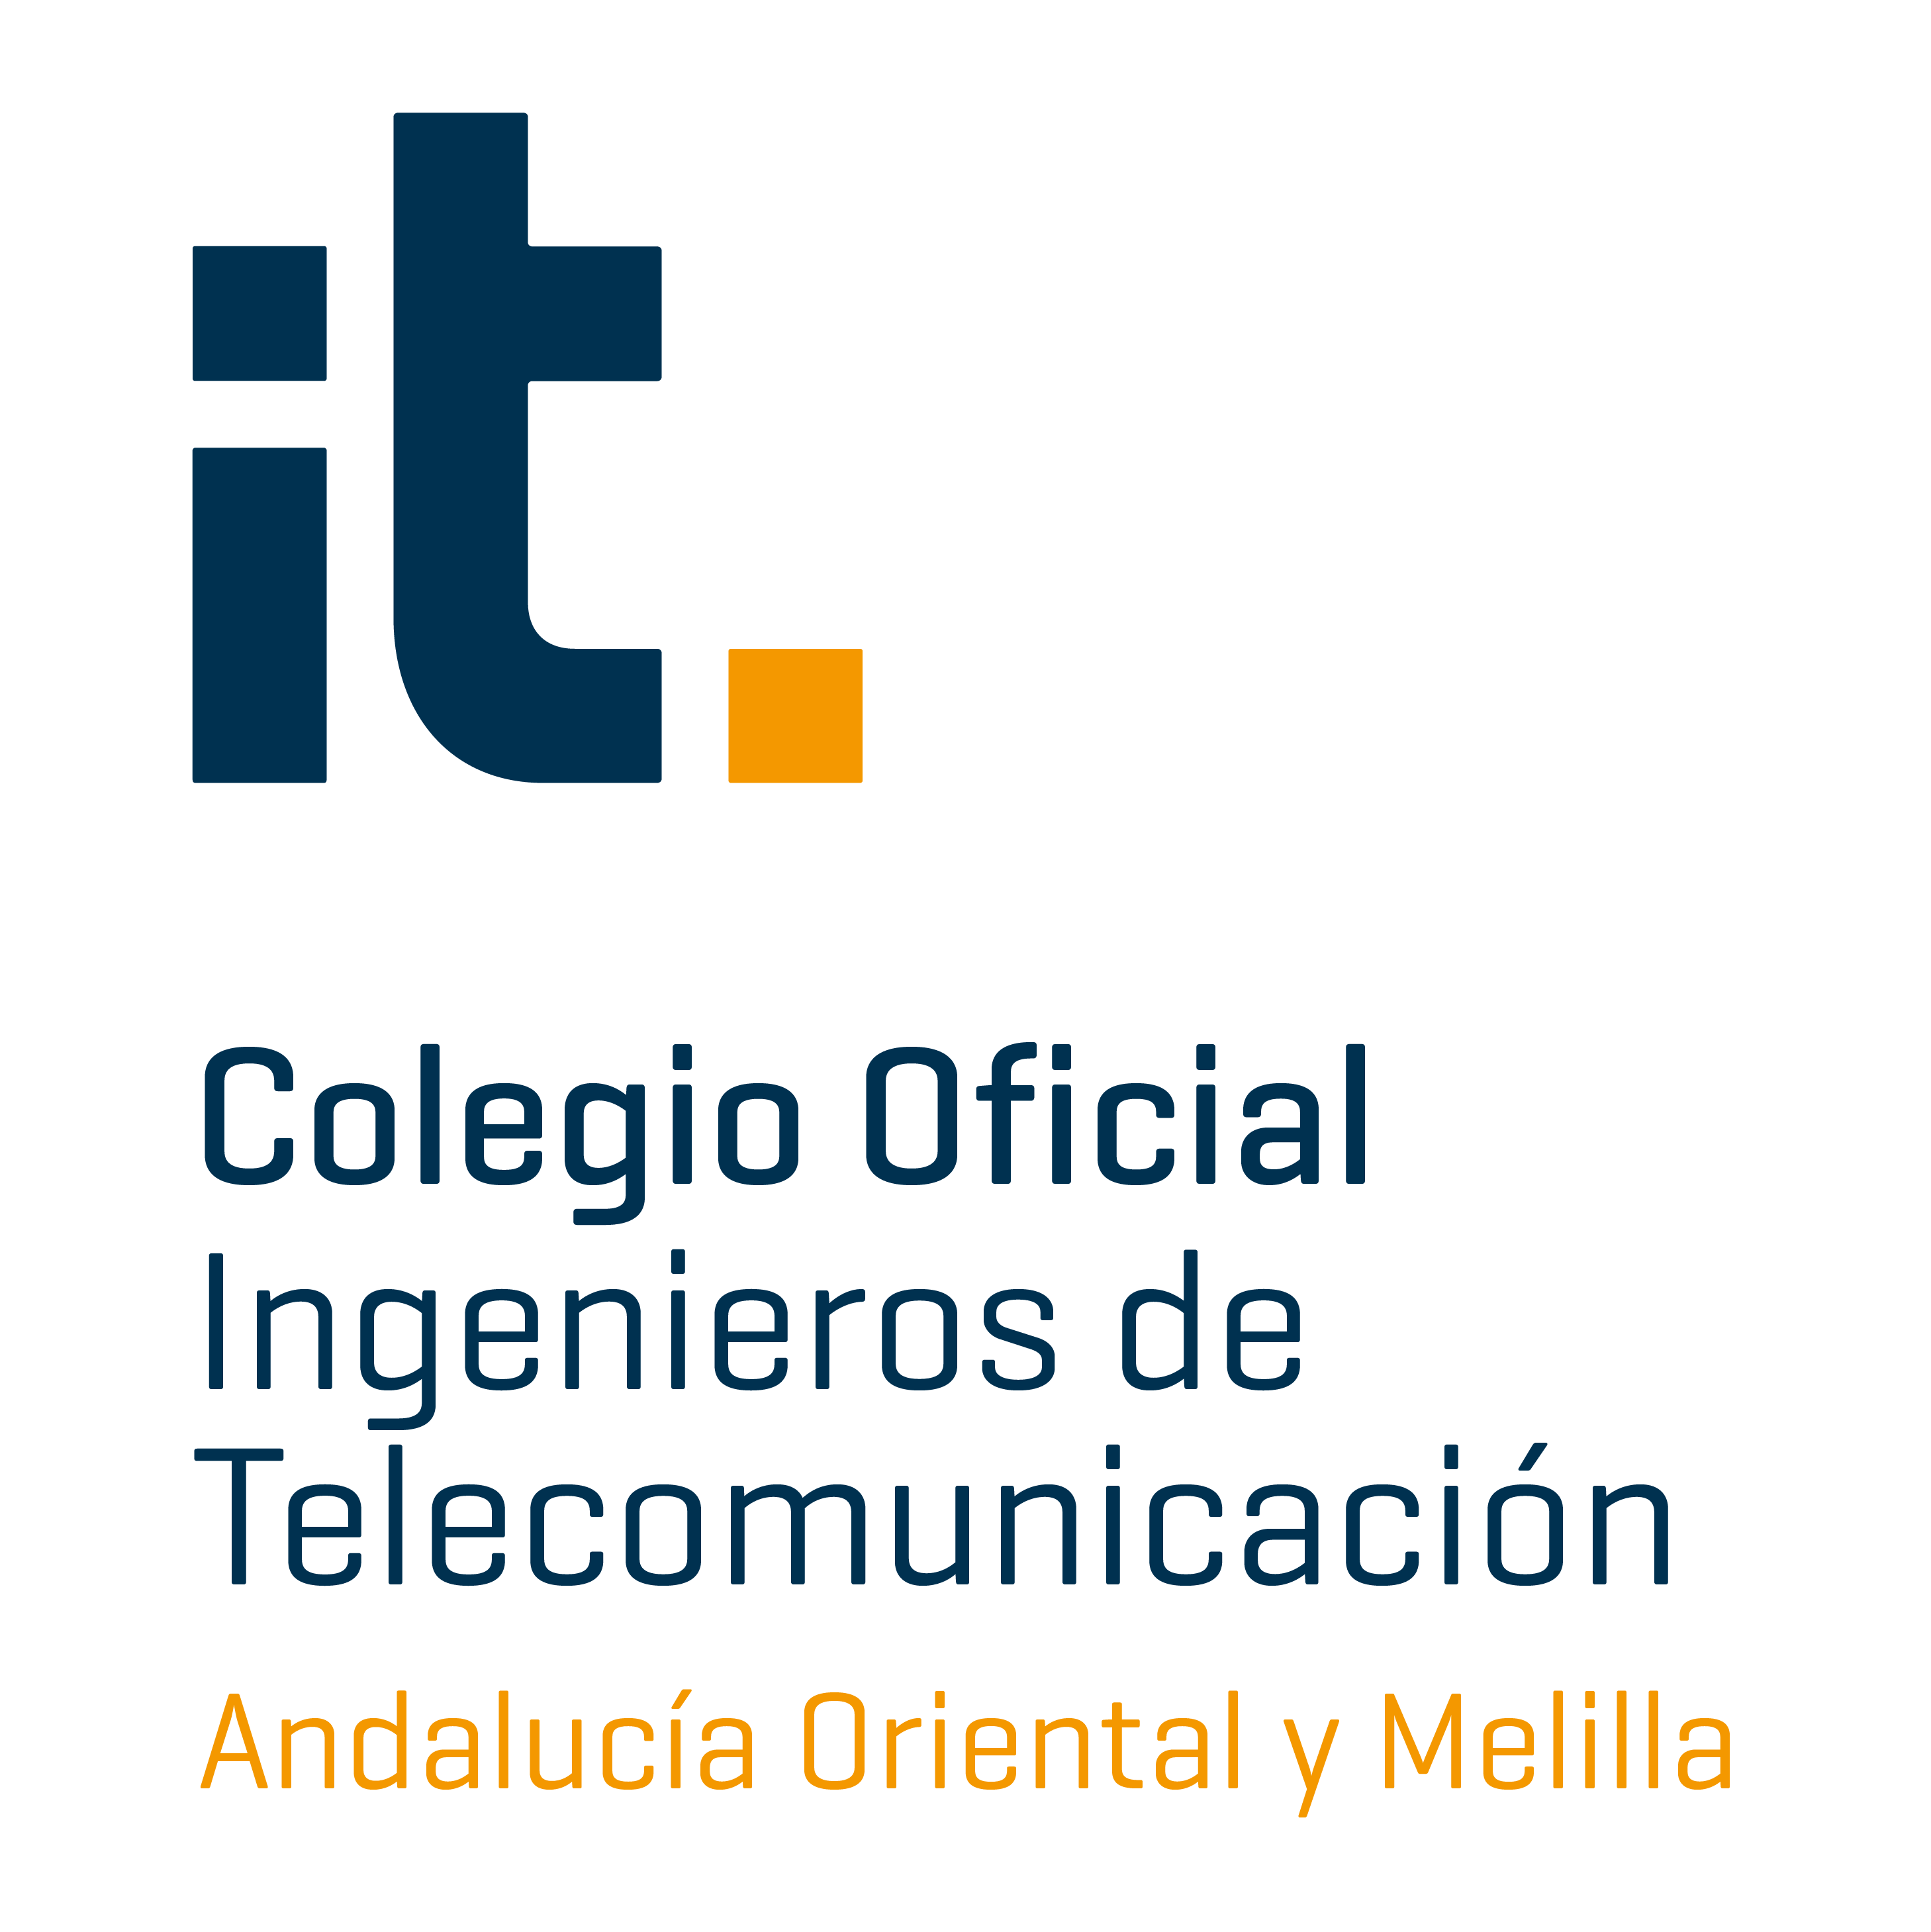 Colegio oficial de ingenieros de telecomunicación Andalucía Oriental y Melilla